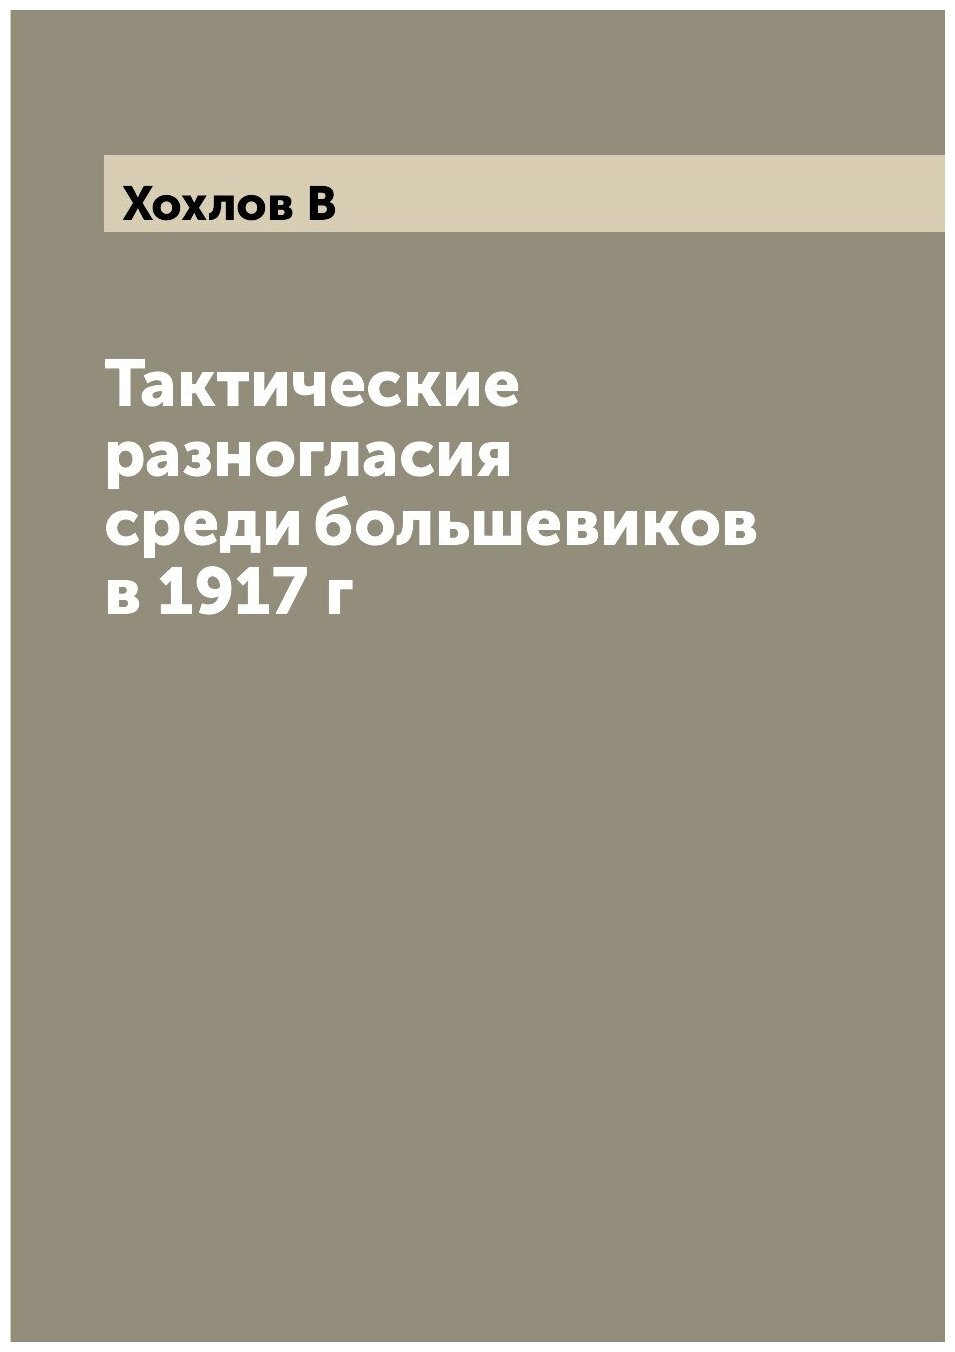 Книга Тактические разногласия среди большевиков в 1917 г - фото №1